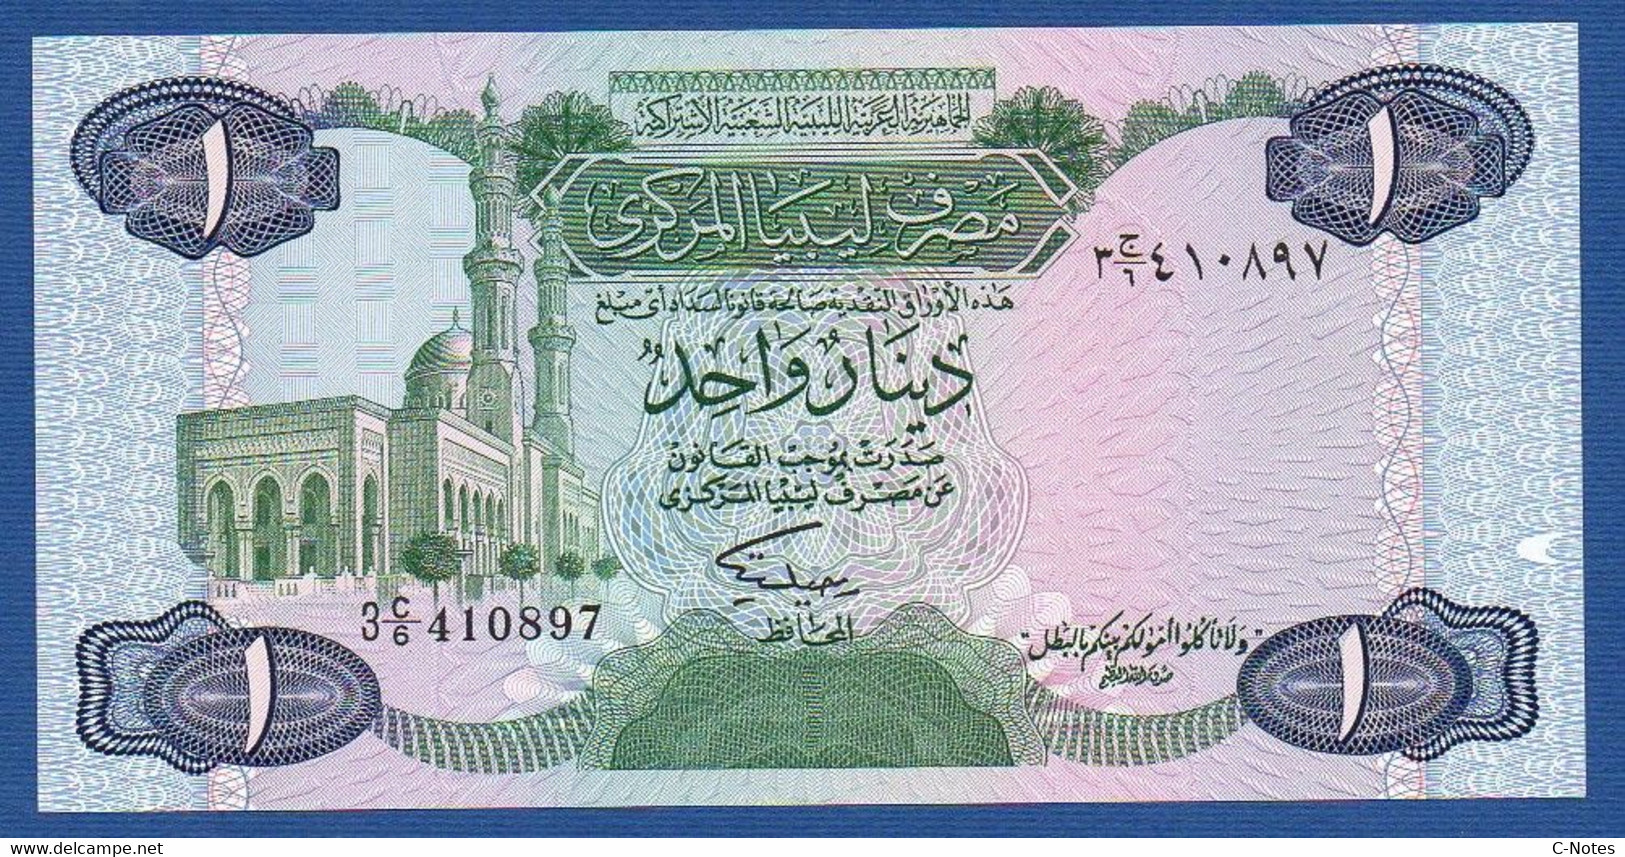 LIBYA - P.49 – 1 Dinar ND (1984) UNC-, Serie  3 C/6 410897 - Libyen